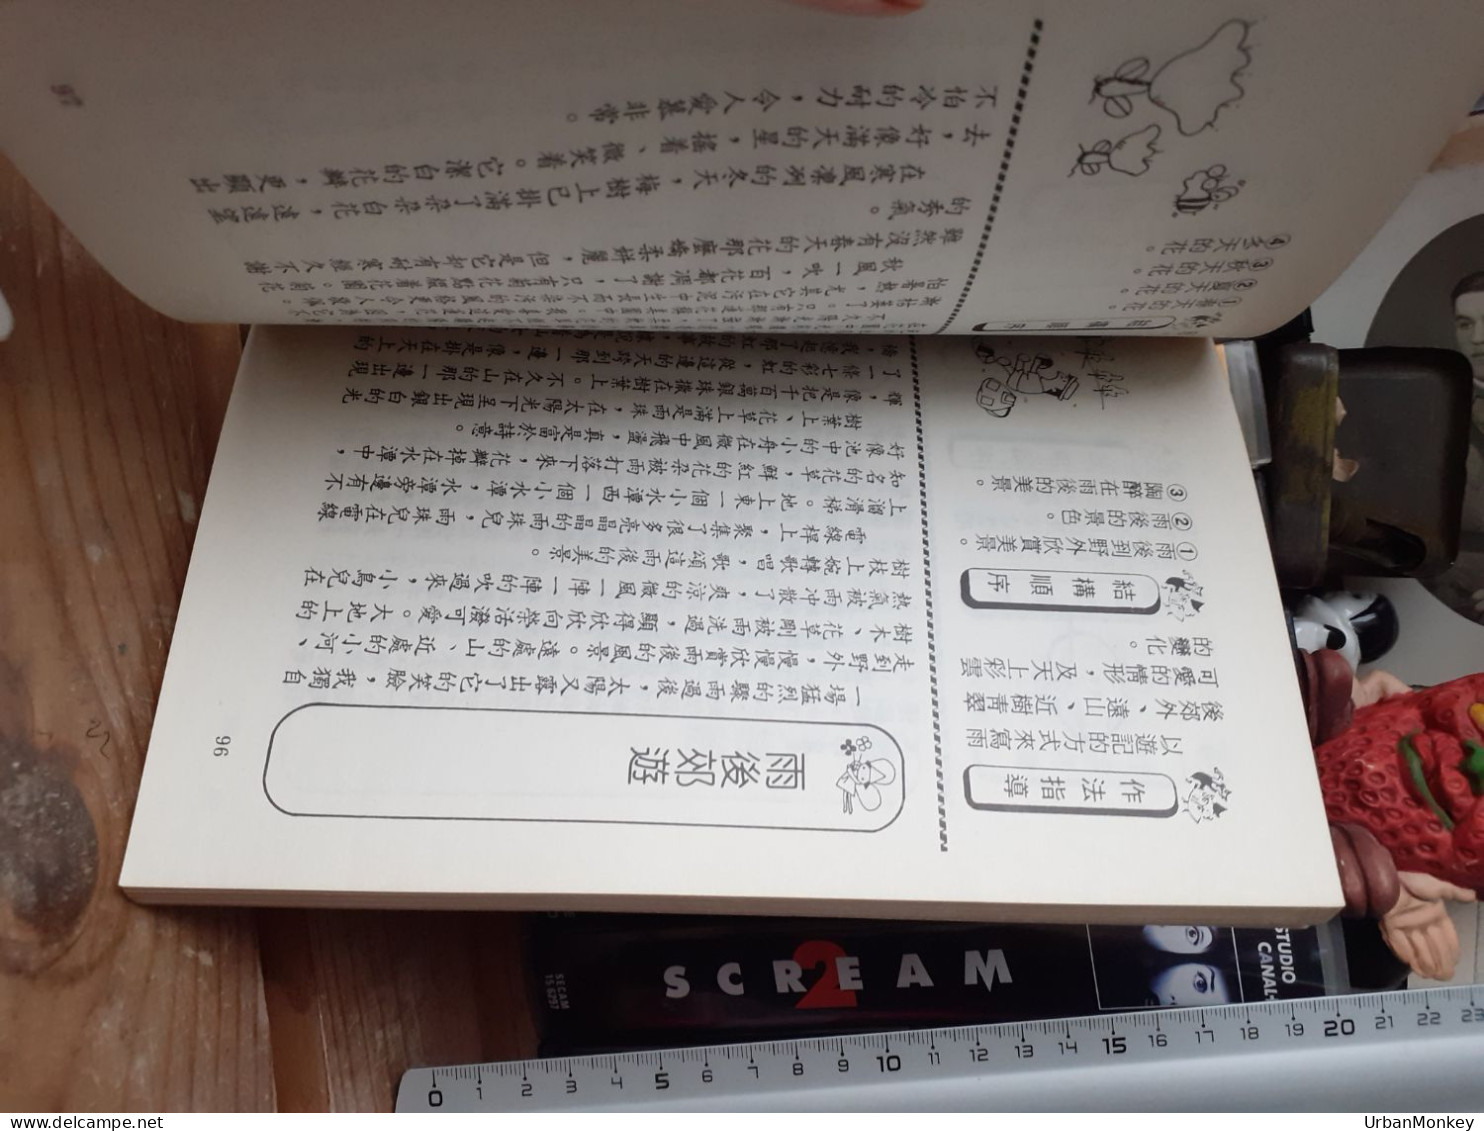 Livre Japonais - Libri Vecchi E Da Collezione